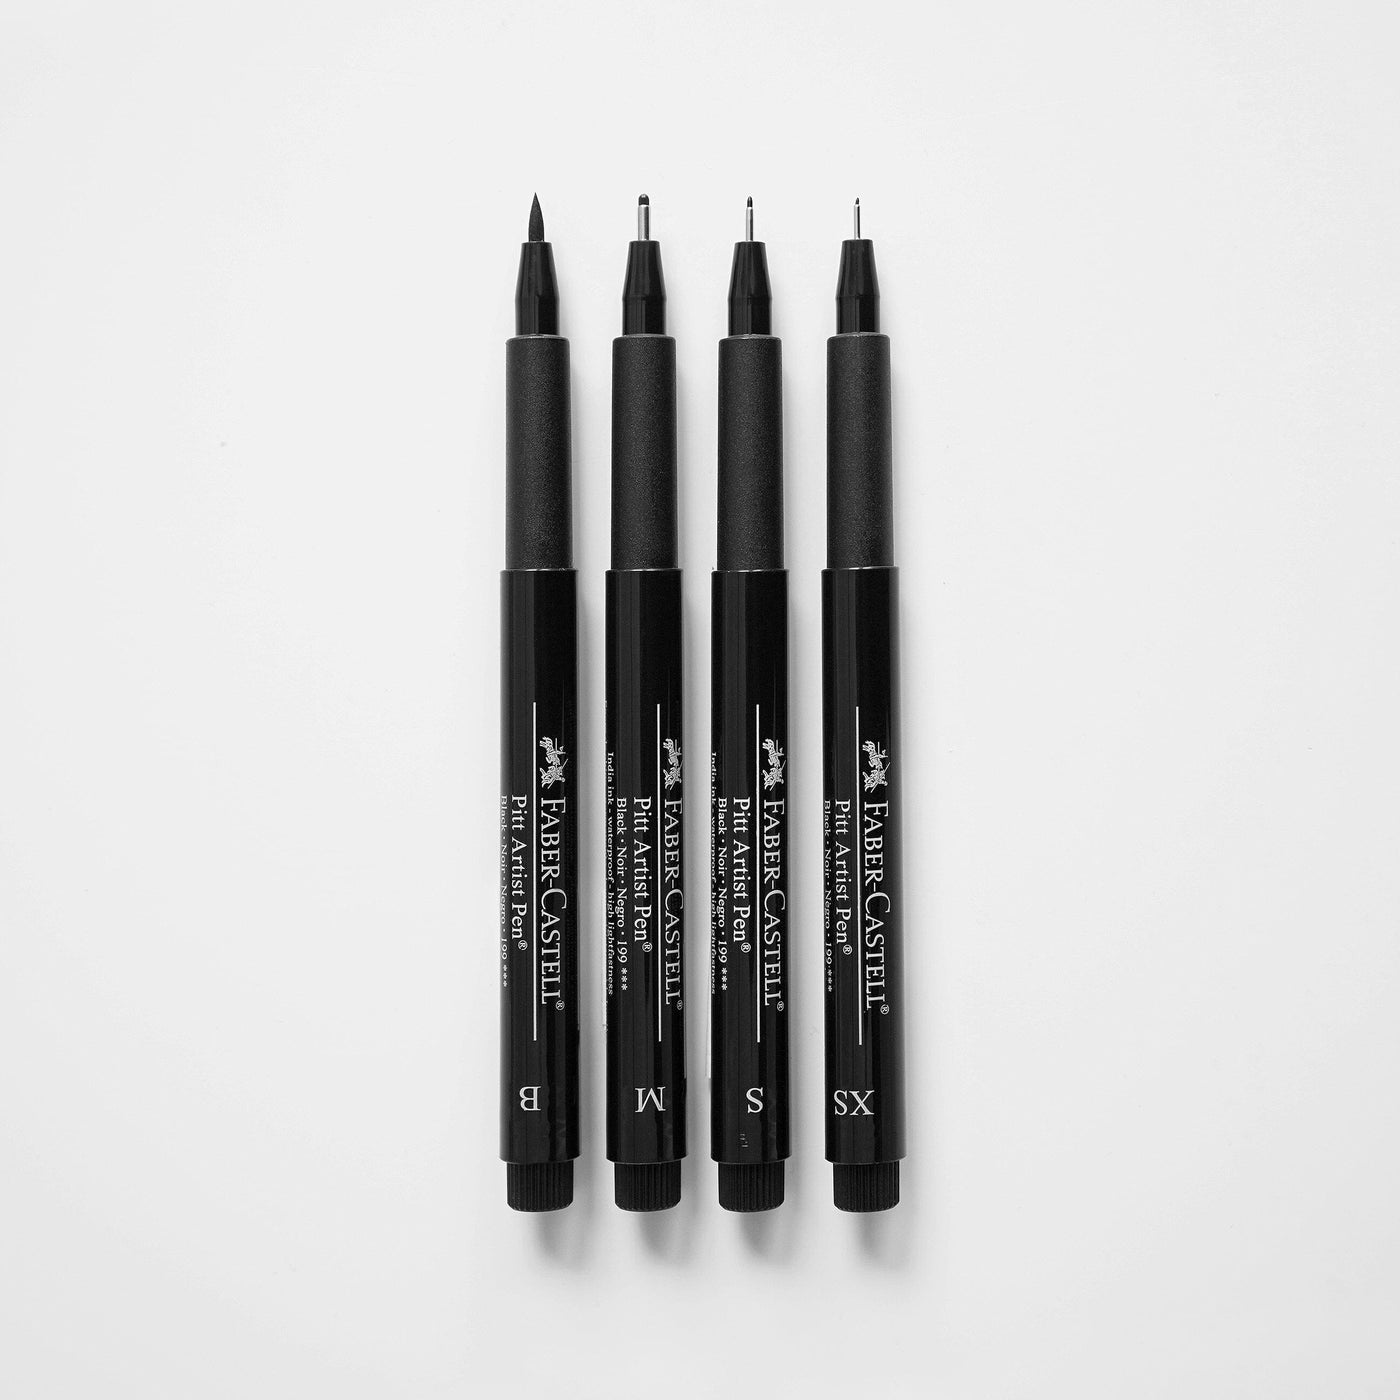 Faber-Castell PITT Artist Pen - B Brush - Black 199